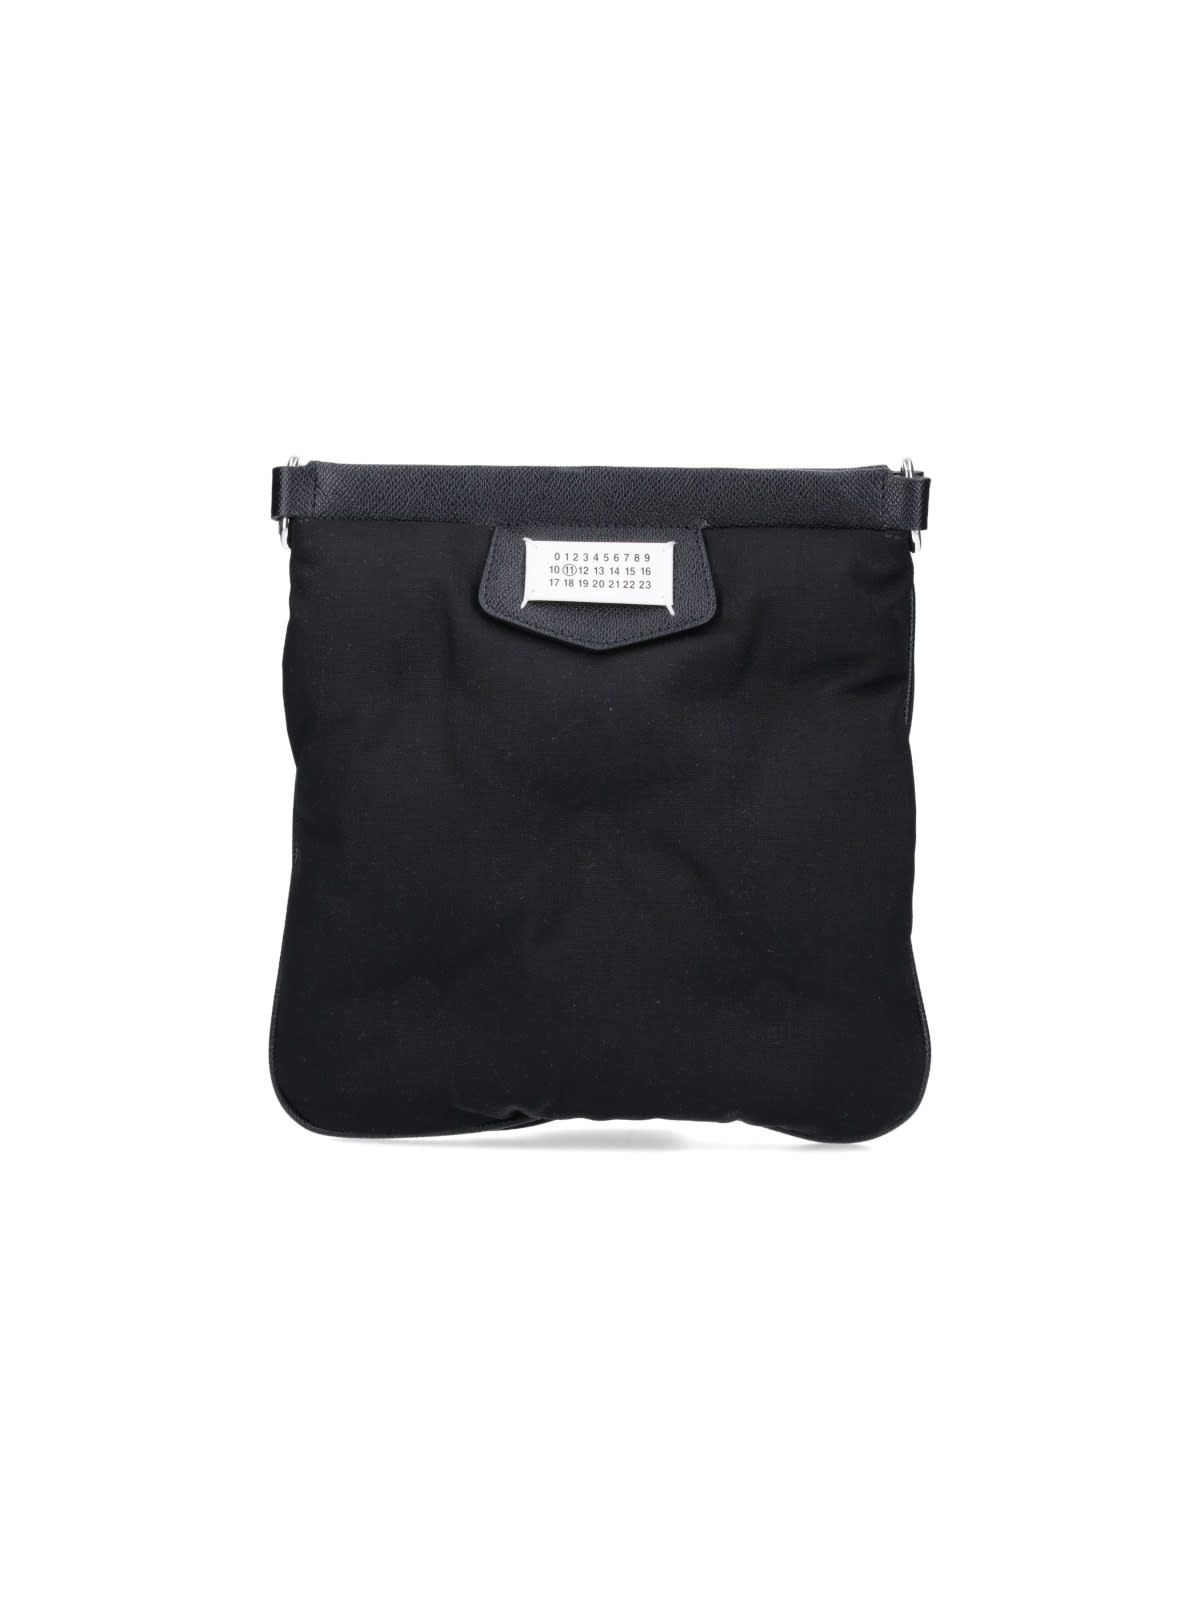 Maison Margiela Glam Slam Crossbody Bag In Black